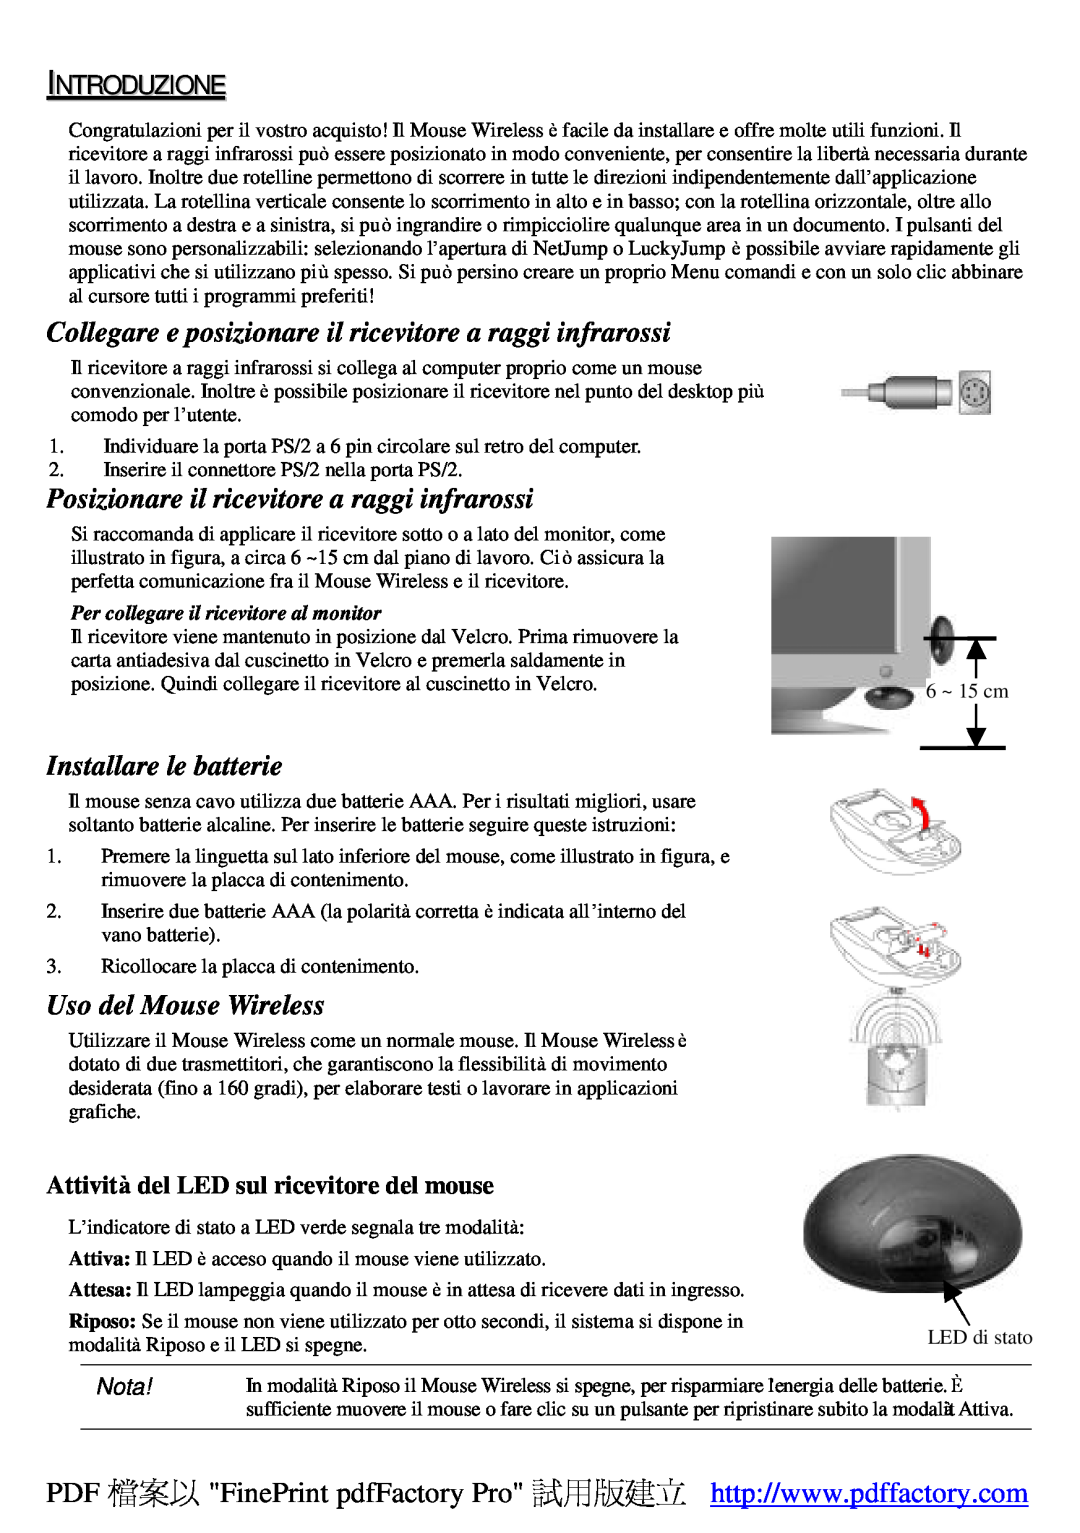 A4 Tech Wireless 1-Wheel Mouse manual Introduzione, Collegare e posizionare il ricevitore a raggi infrarossi, Nota 